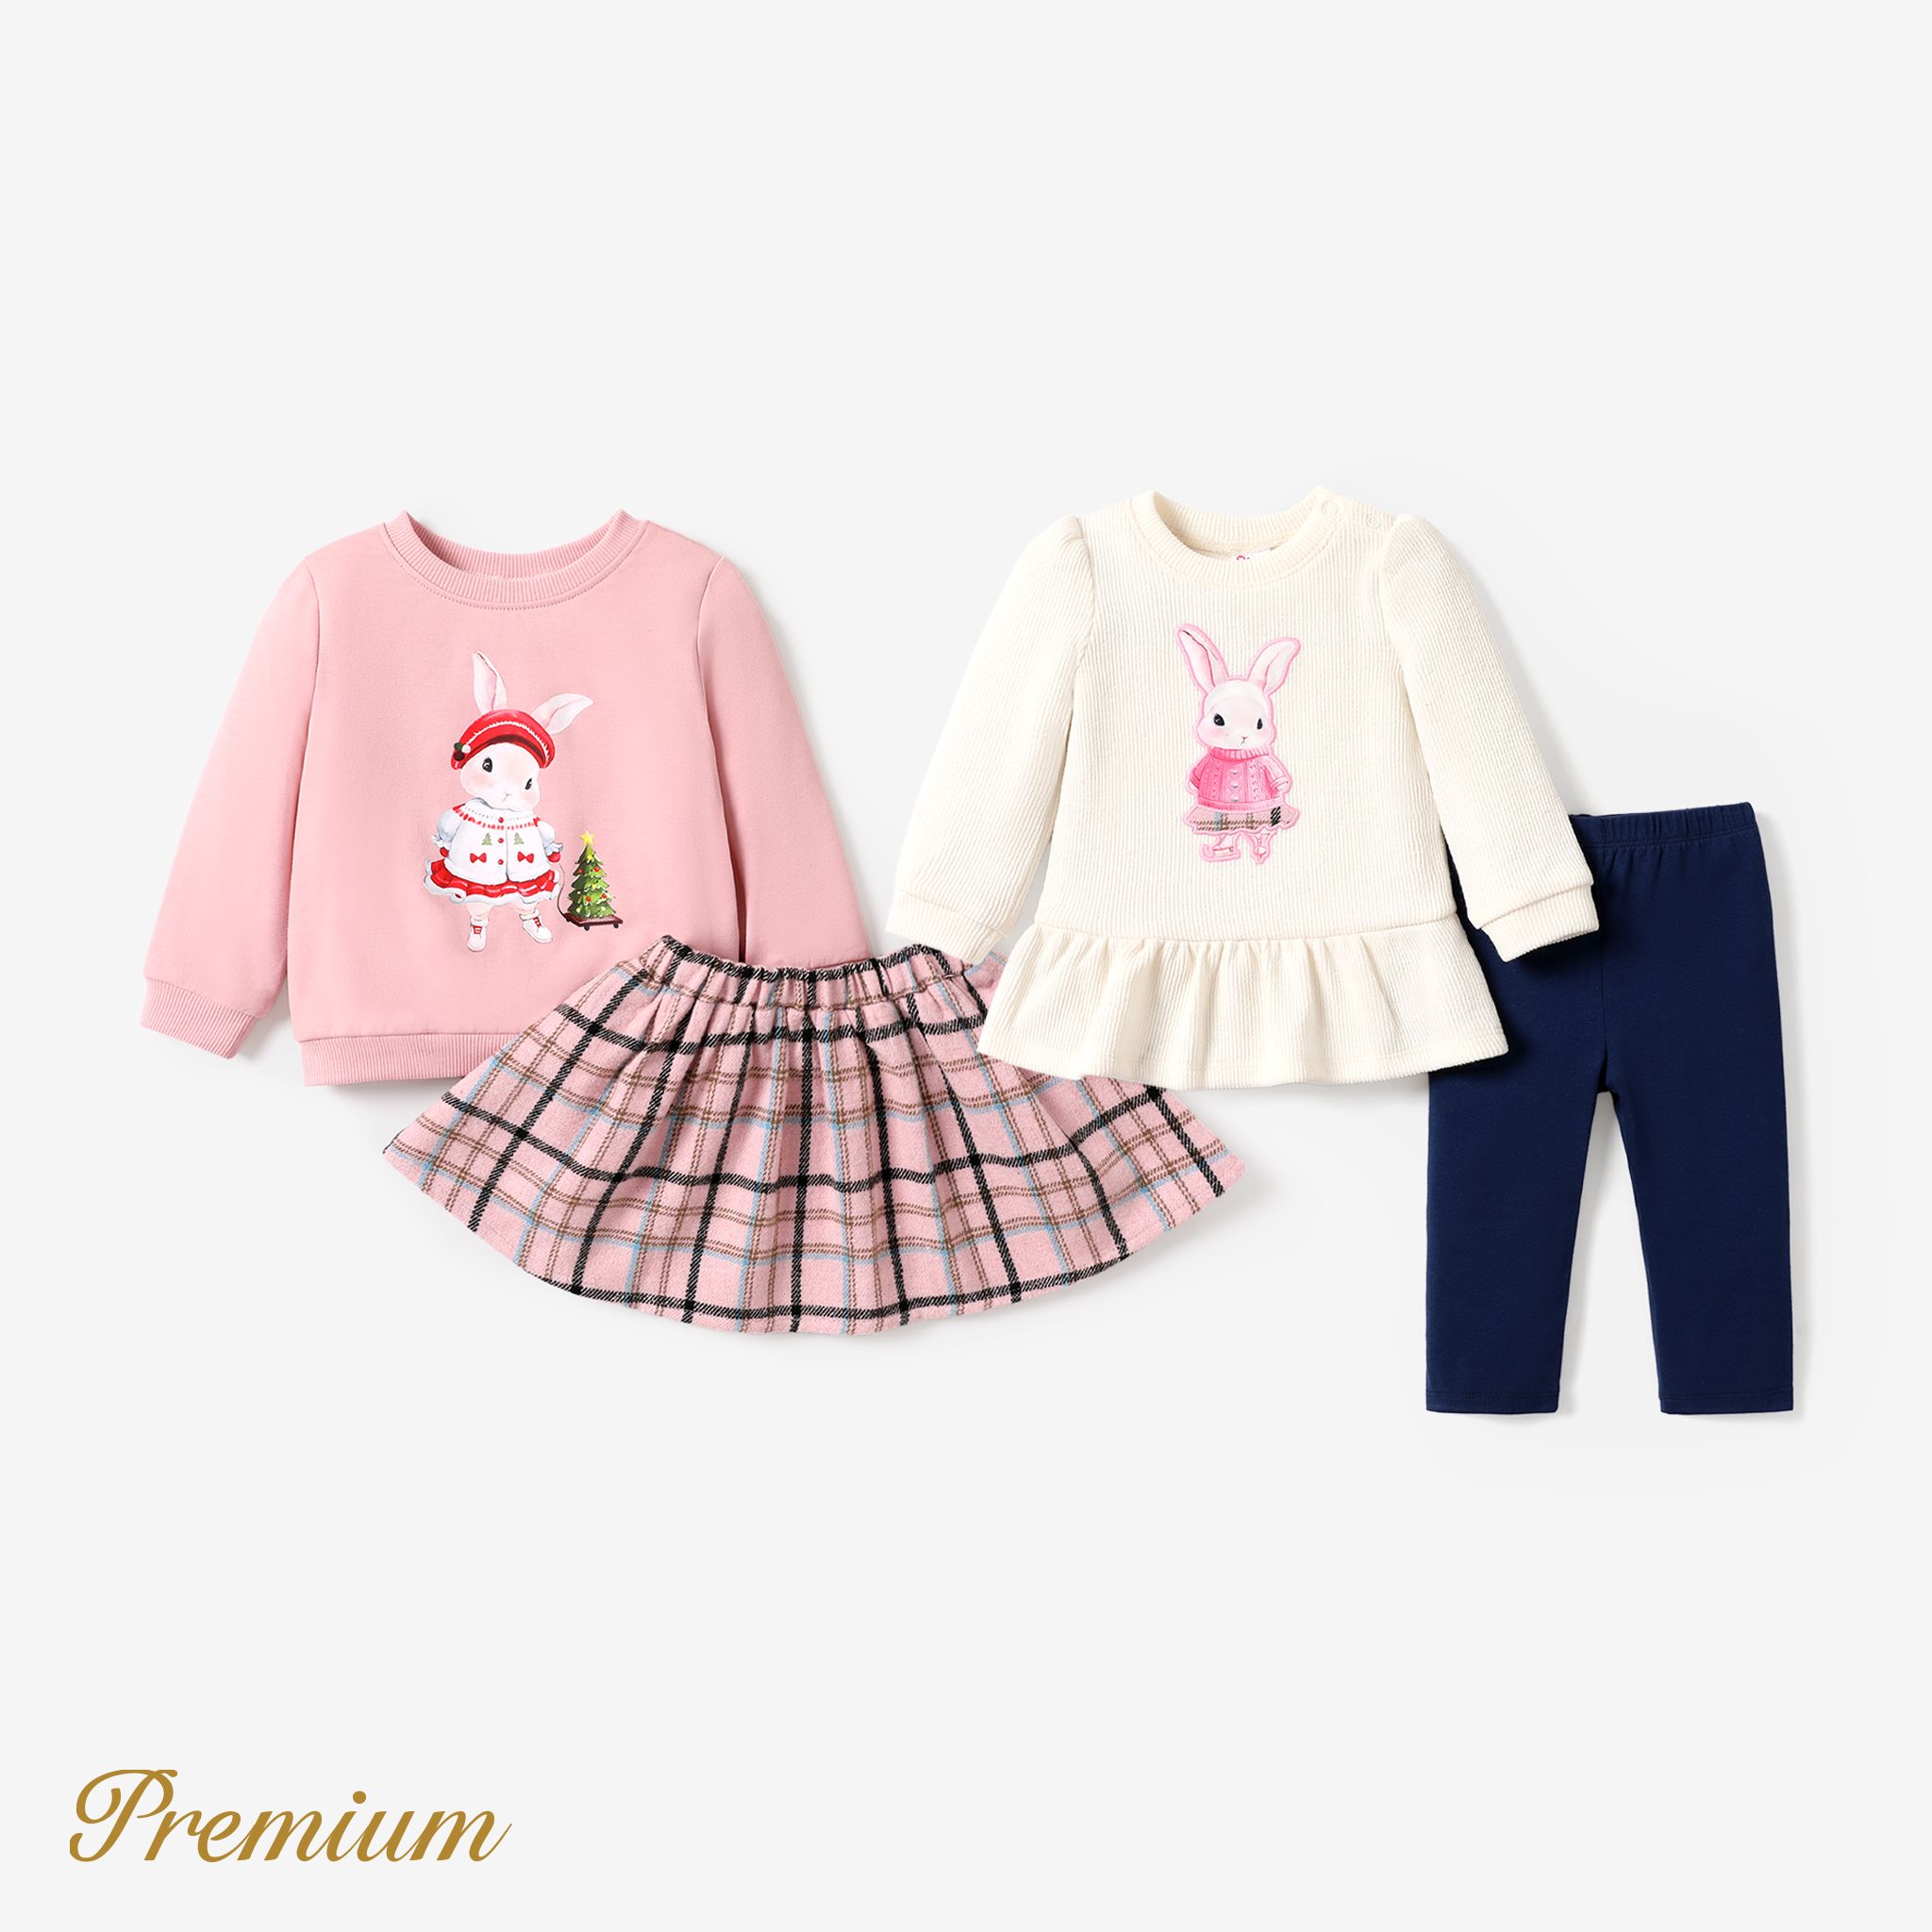 2pcs Baby/Toddler Girl Sweet Rabbit Pattern Set